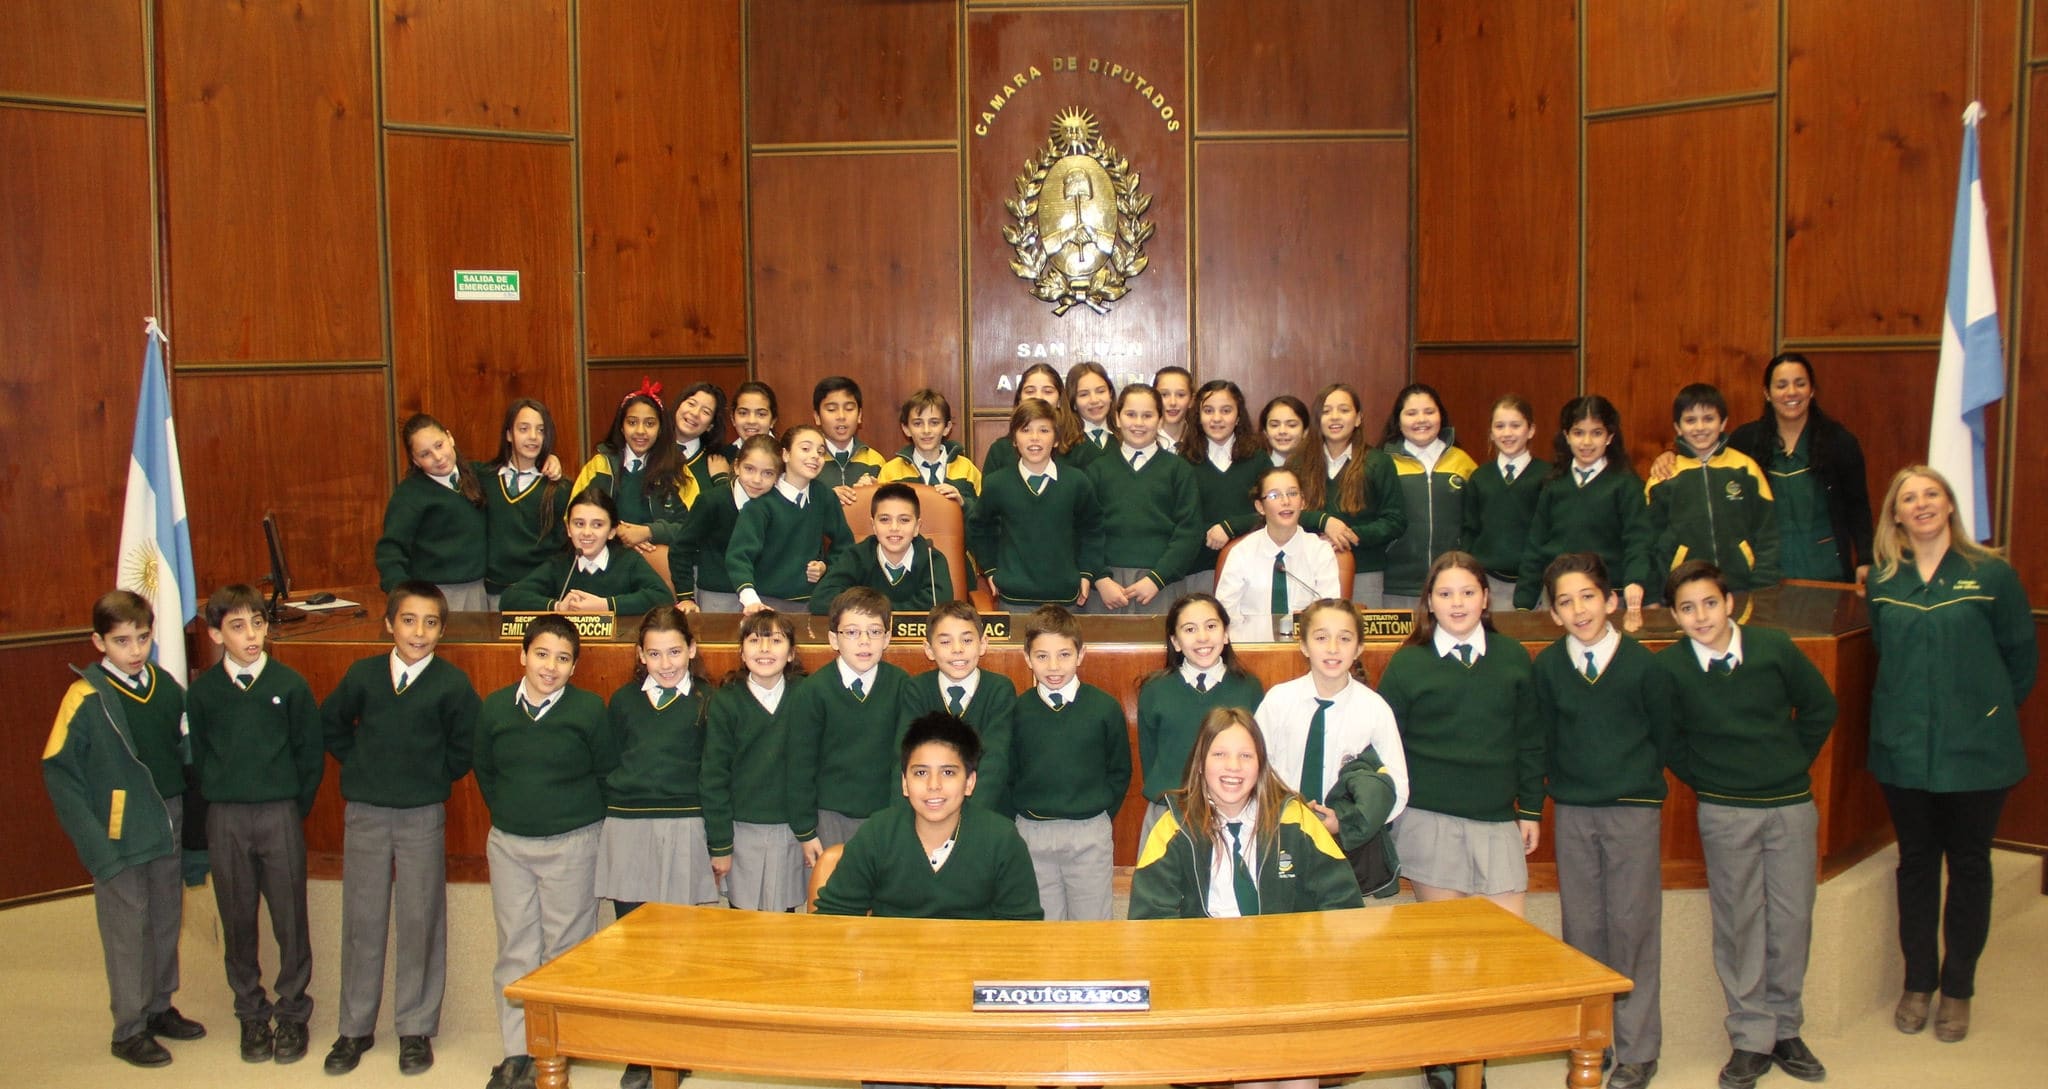 Alumnos y docentes del colegio "Los Olivos" presentes en la Legislatura.  